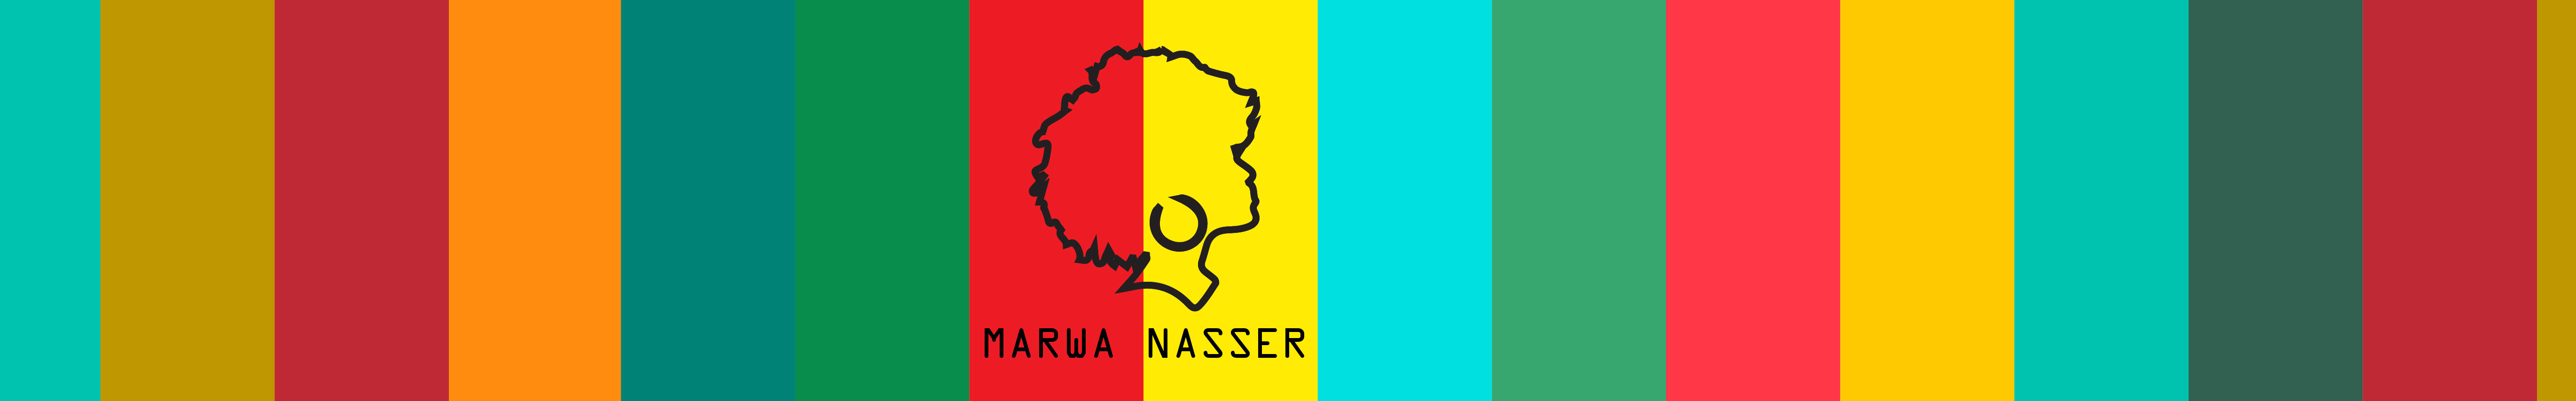 marwa nasser's profile banner